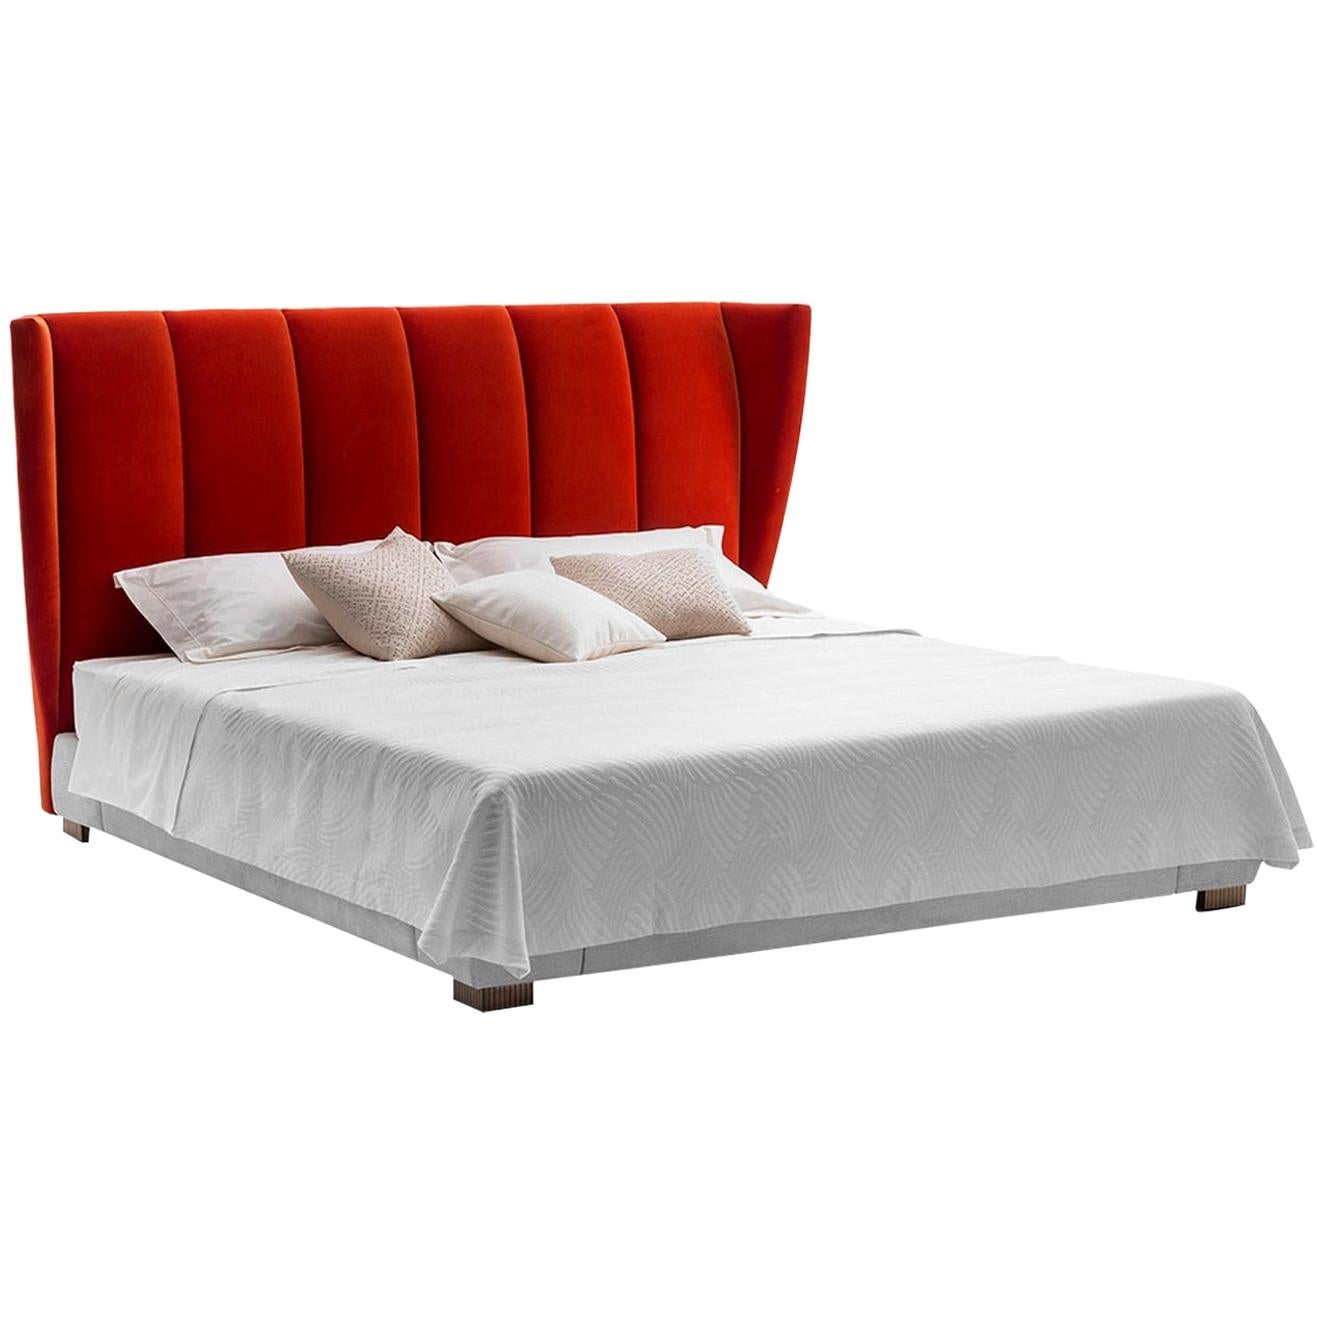 Rotes Bett aus rotem Samt in Königsgröße, entworfen von Luca Scacchetti von Luca Scacchetti